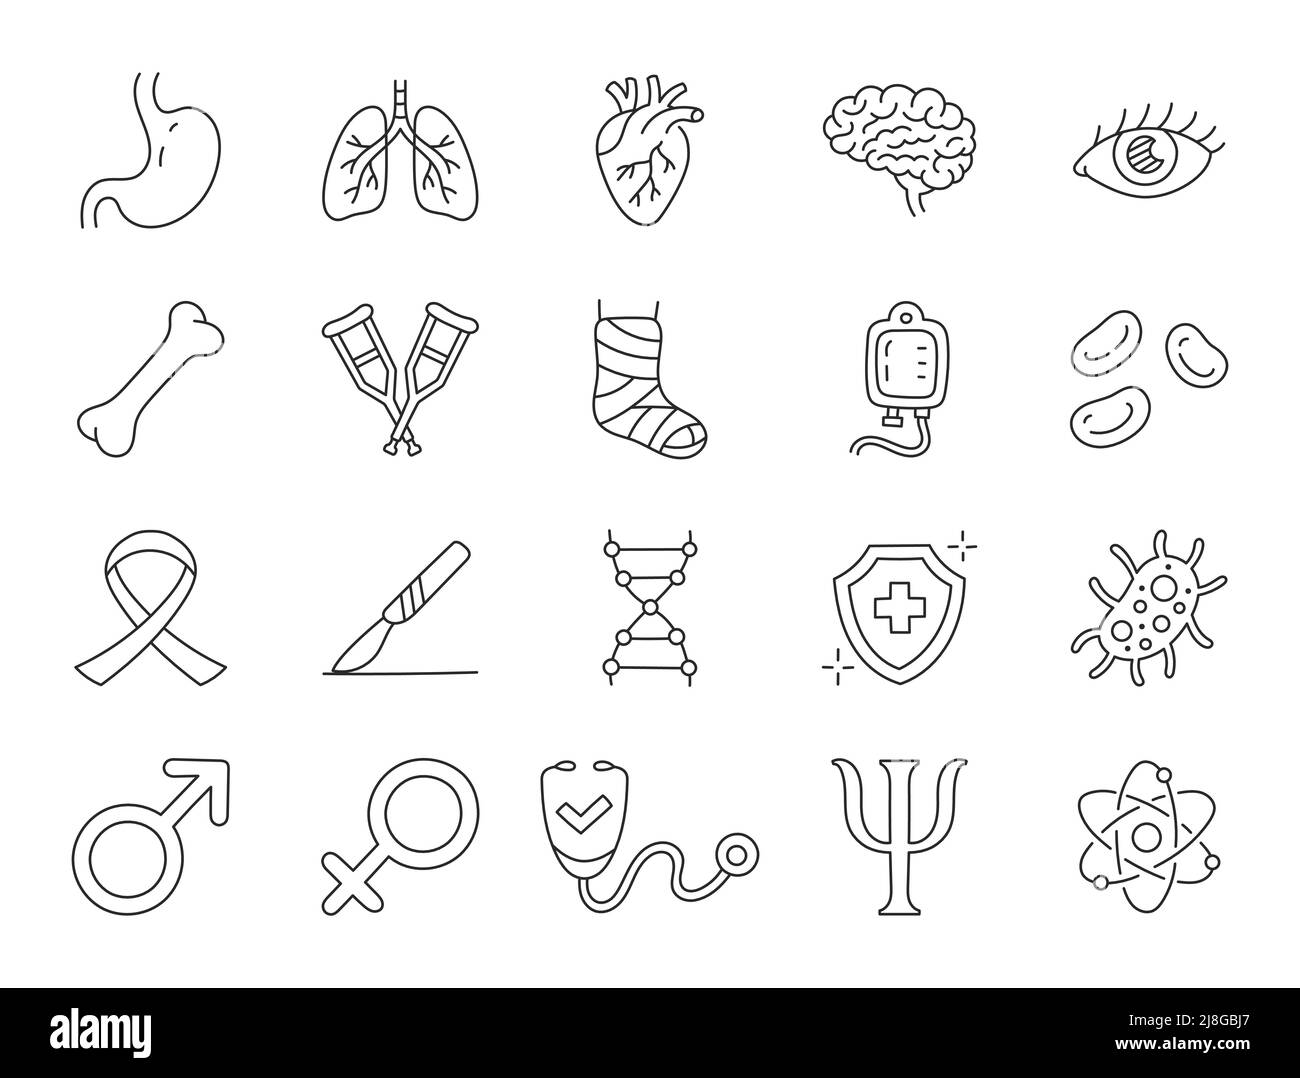 Illustrazione di doodle di specializzazione medica compreso le icone - stomaco, urologia, cardiologia, cuore, pulmonologey, immunologo, terapista, psicologo Illustrazione Vettoriale